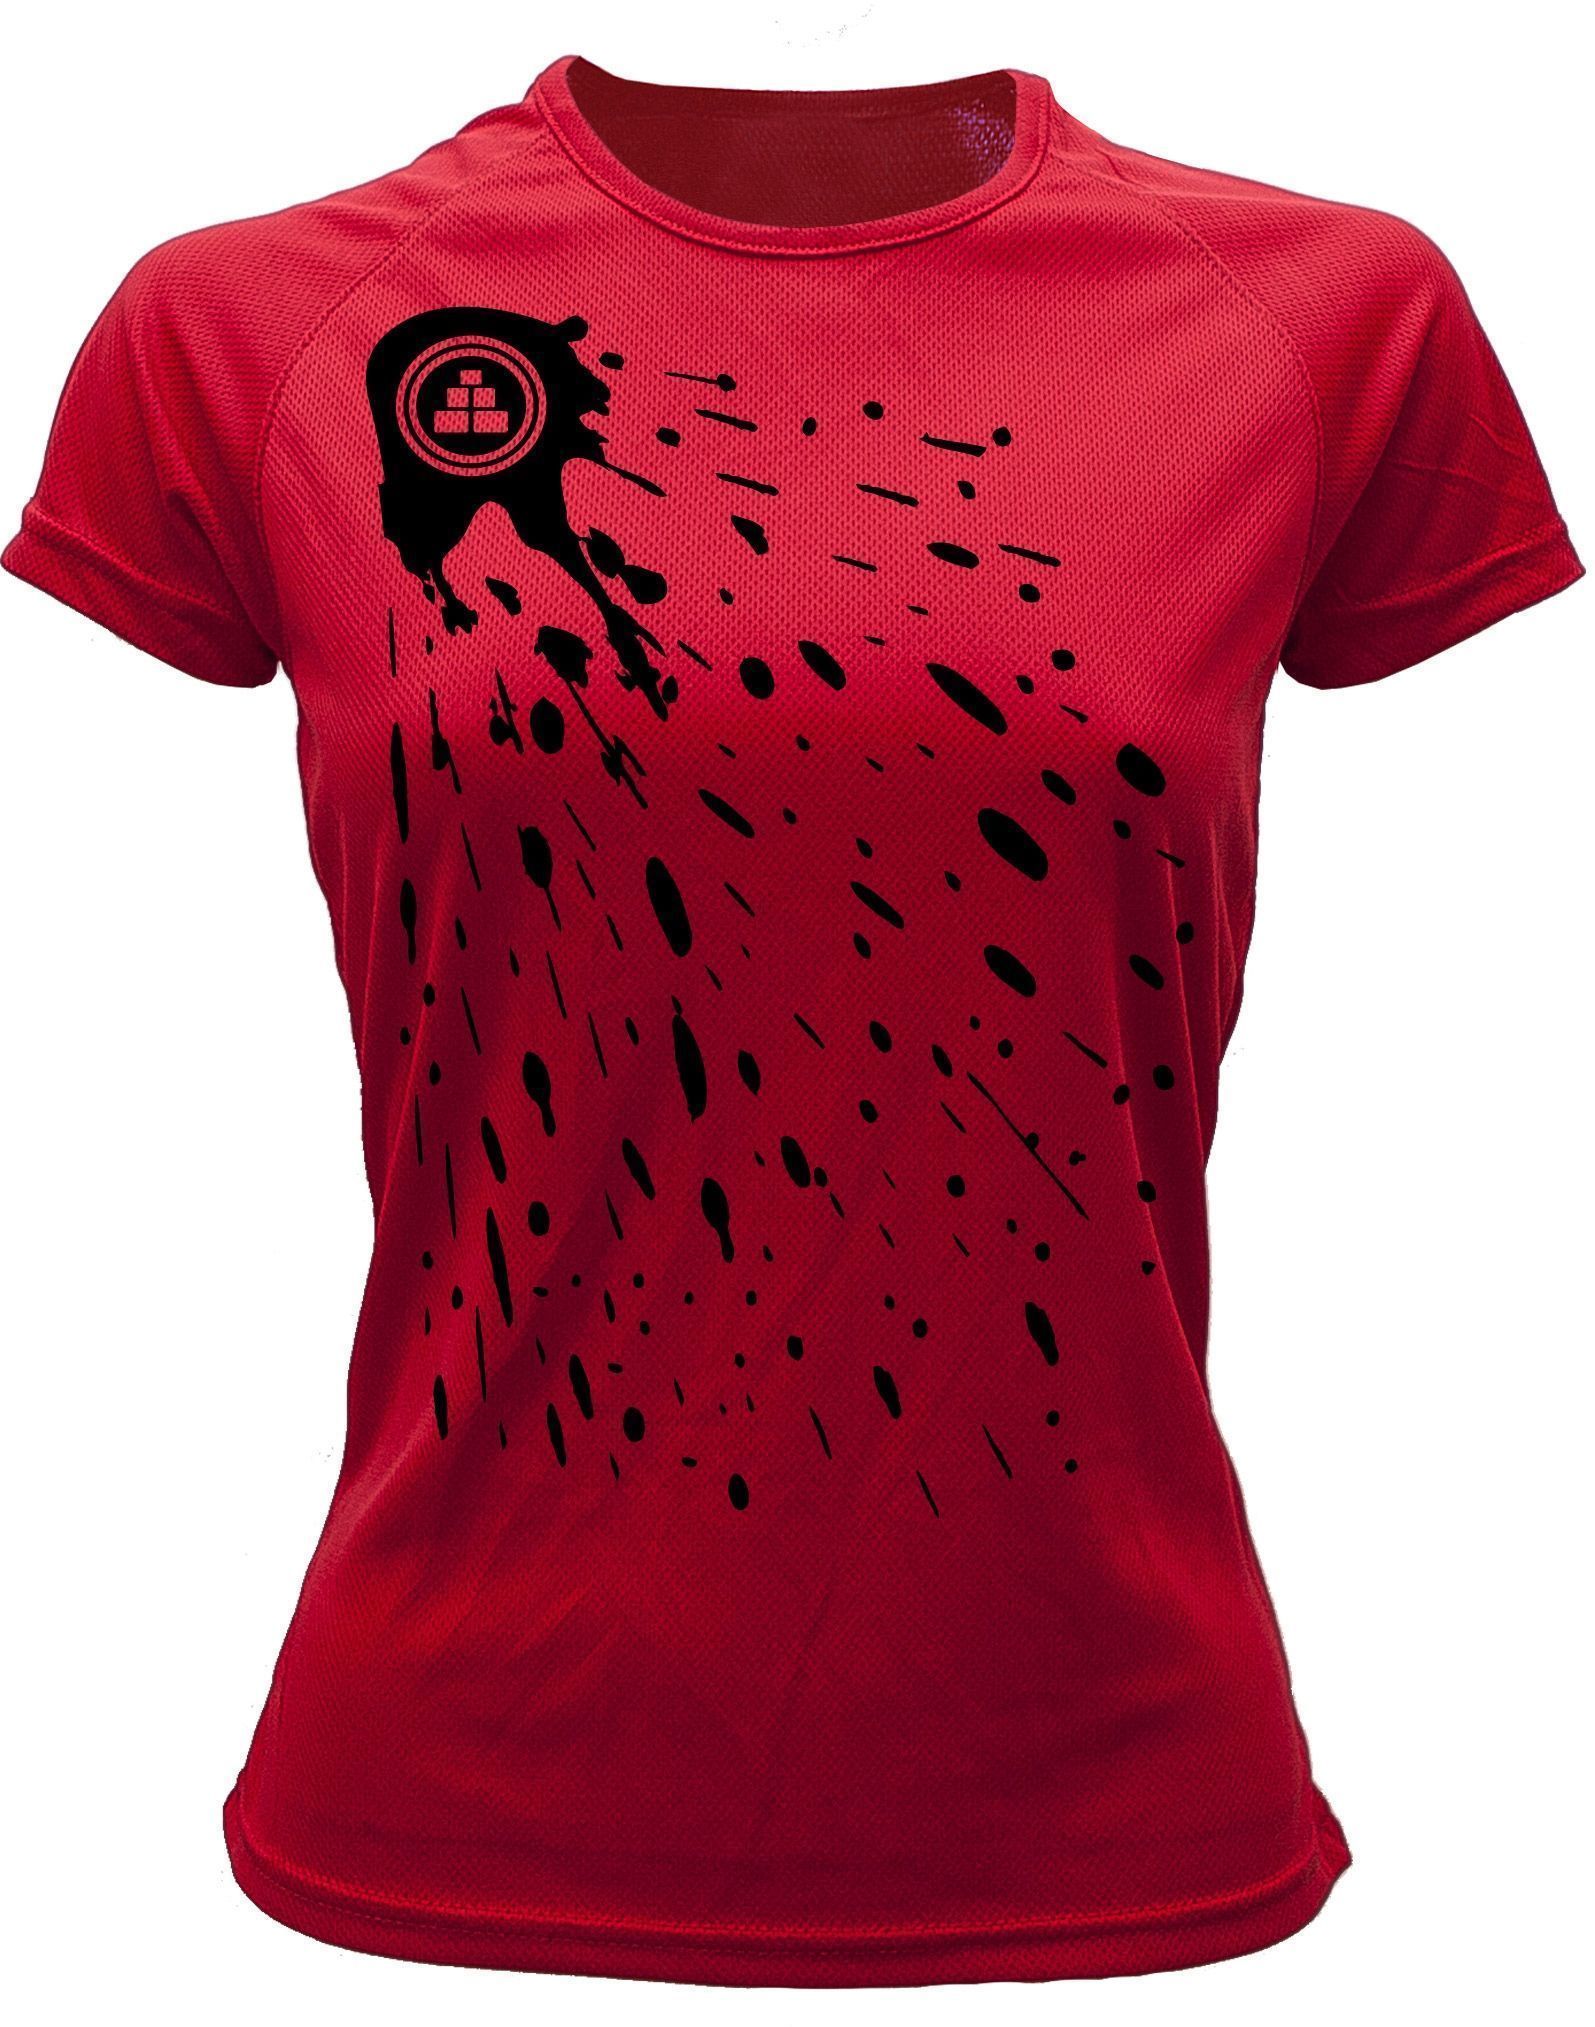 Camiseta deportiva Mujer pintura Roja